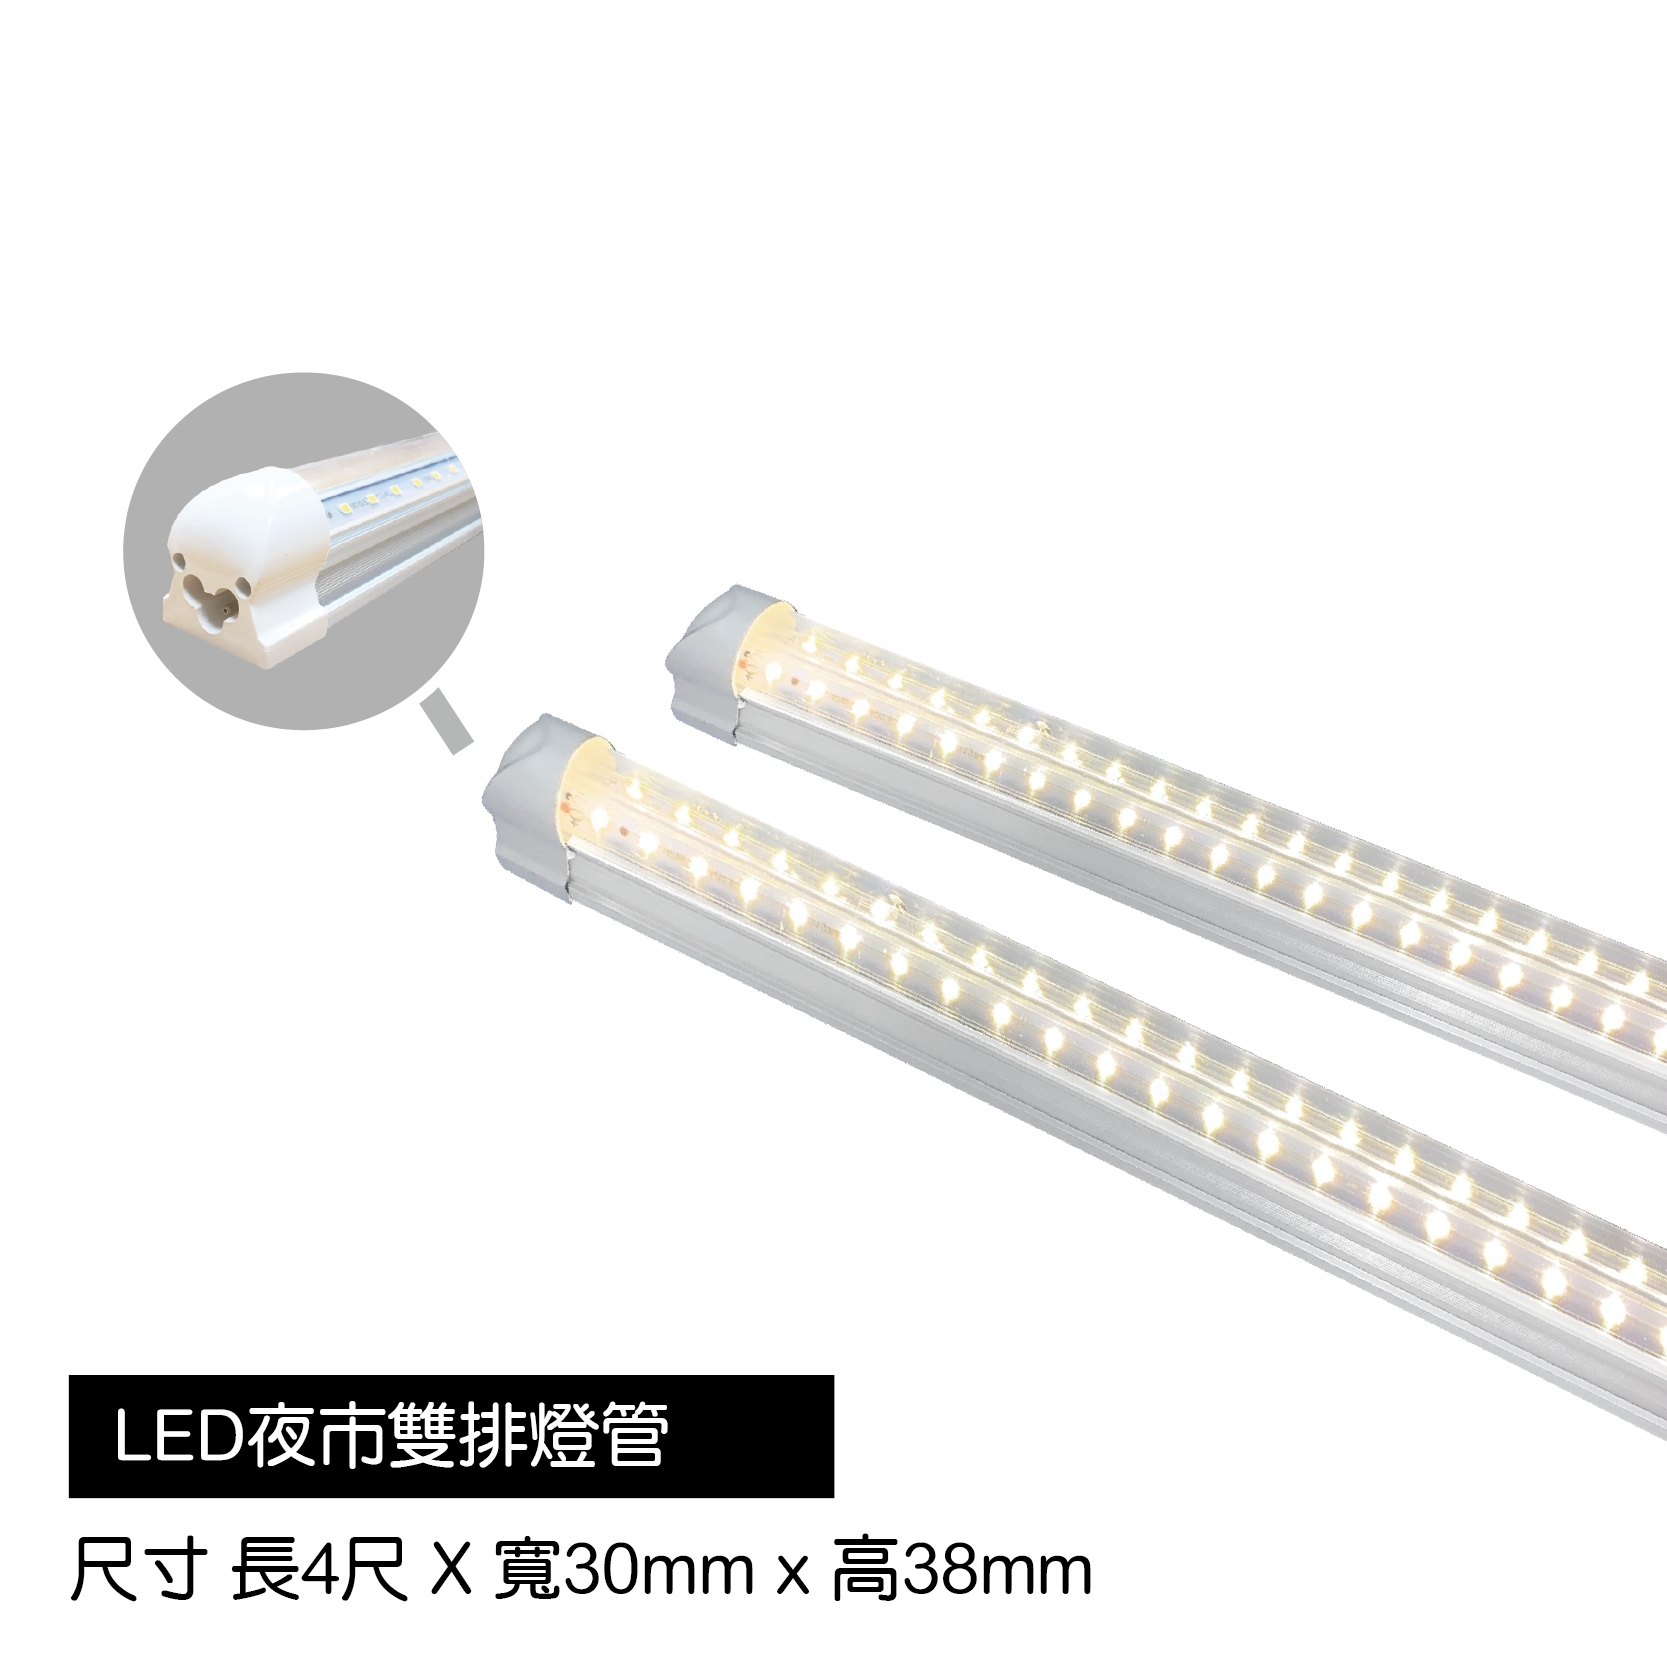 LED夜市雙排燈管